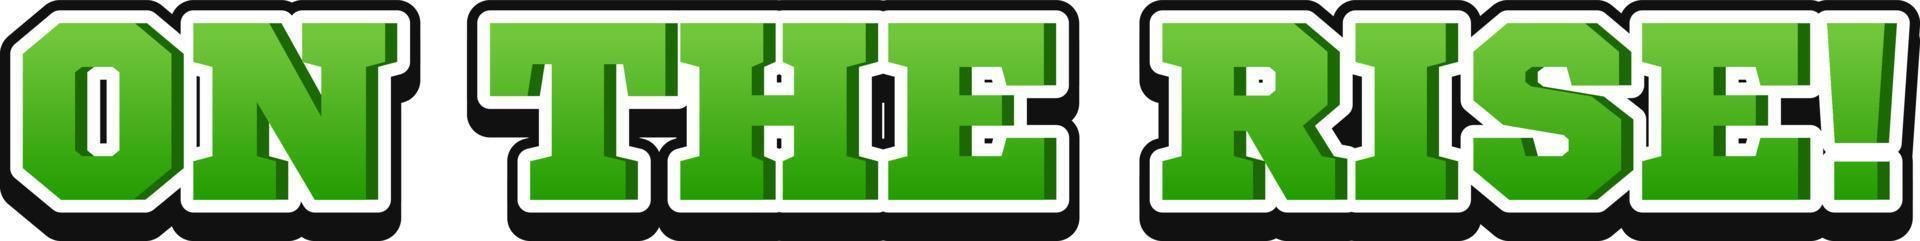 logo du mot vert one the rise vecteur